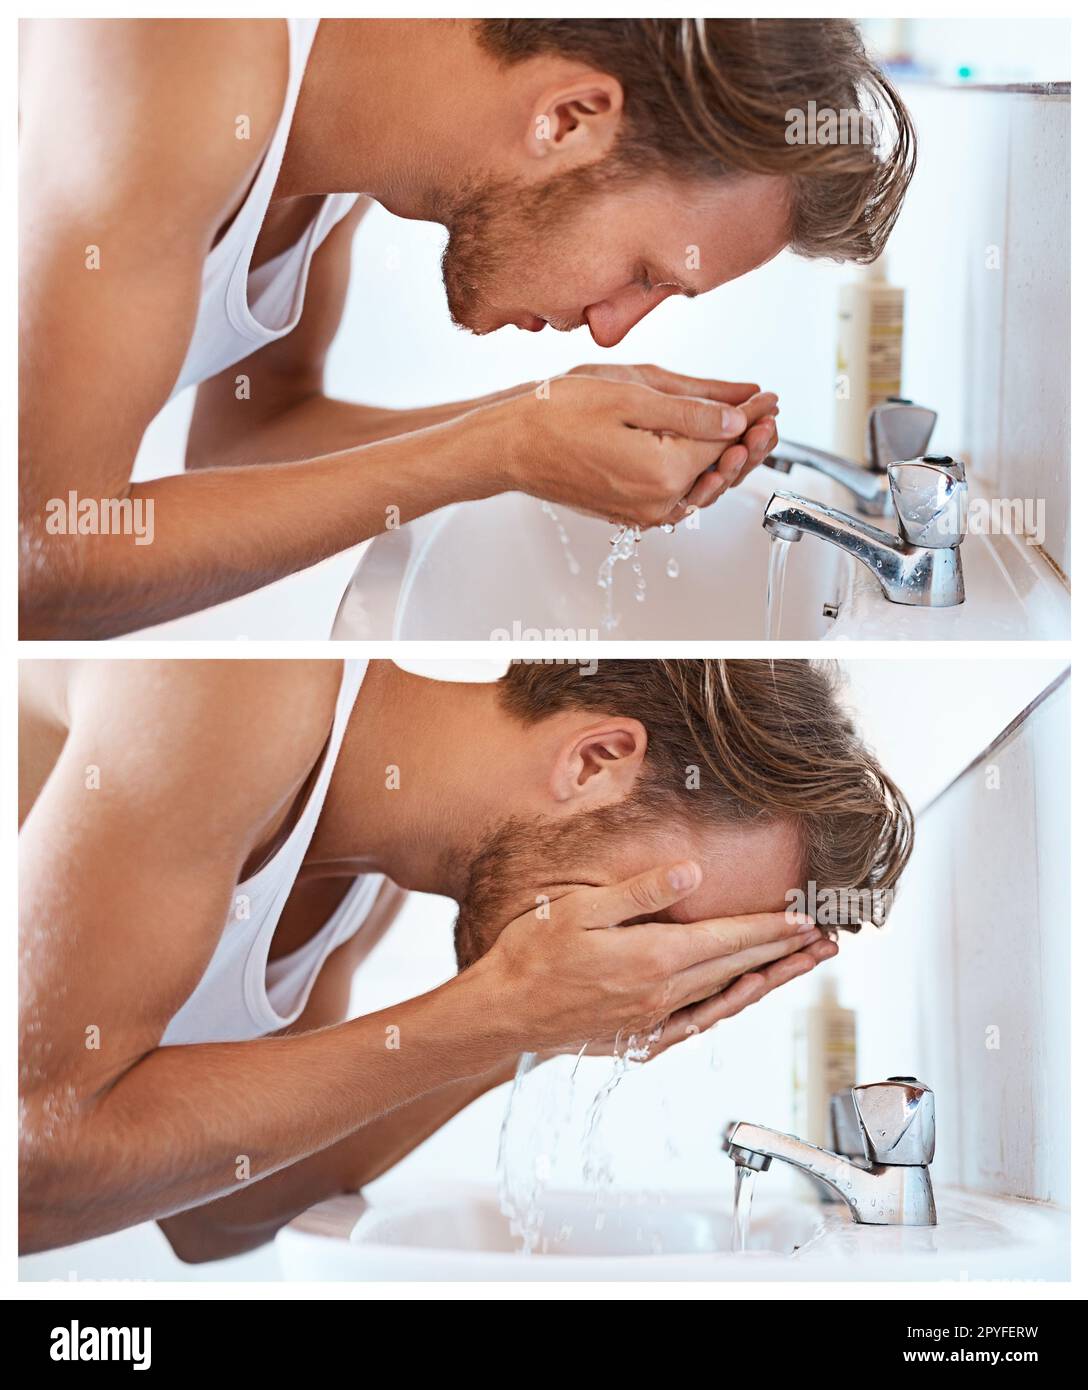 Pour bien commencer la journée. un jeune homme lavant son visage dans un lavabo de la salle de bains. Banque D'Images